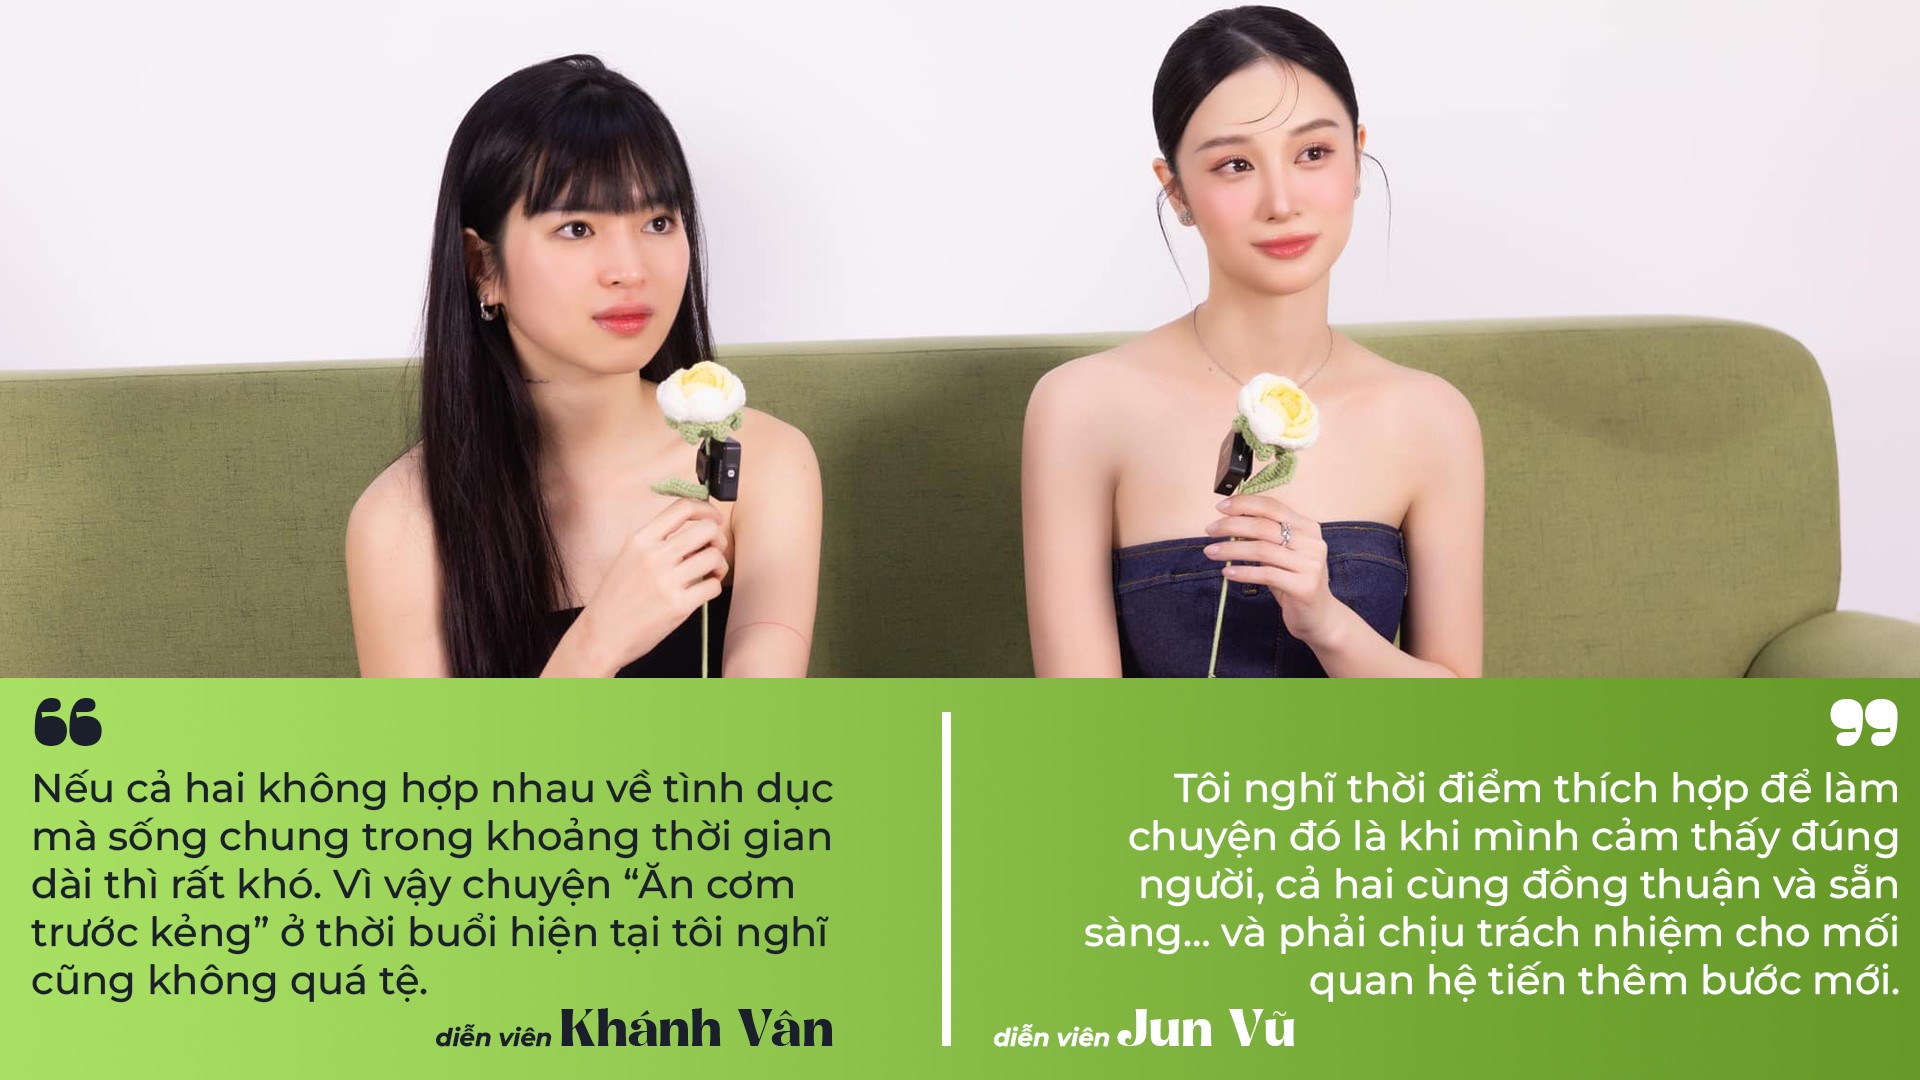 Jun Vũ, Khánh Vân nói về quan điểm “Ăn cơm trước kẻng” - 6